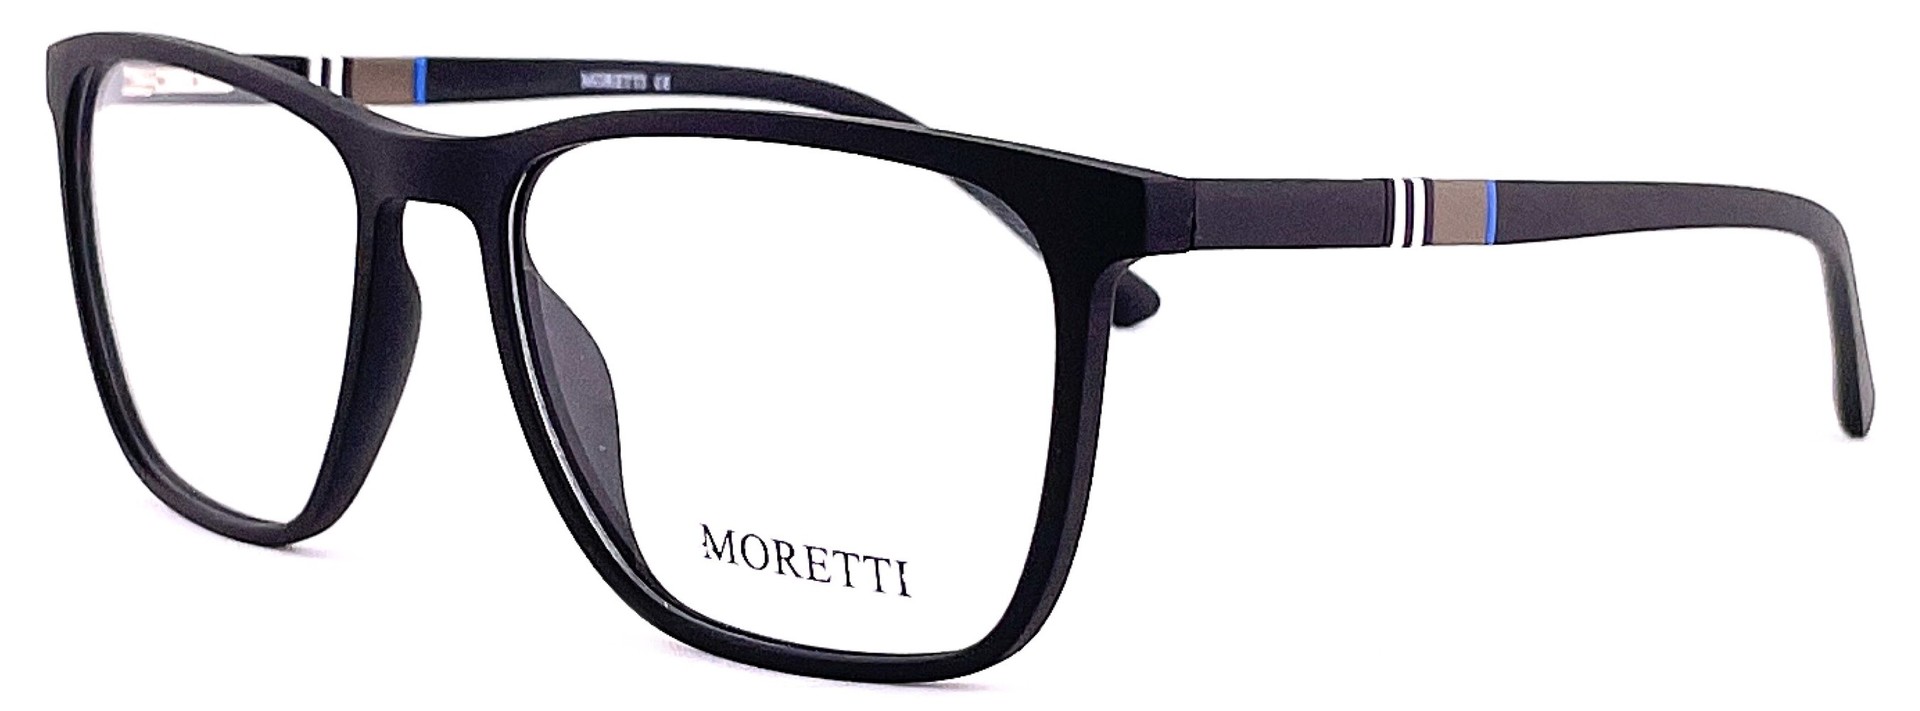 Moretti MF03-05 C.01M 2